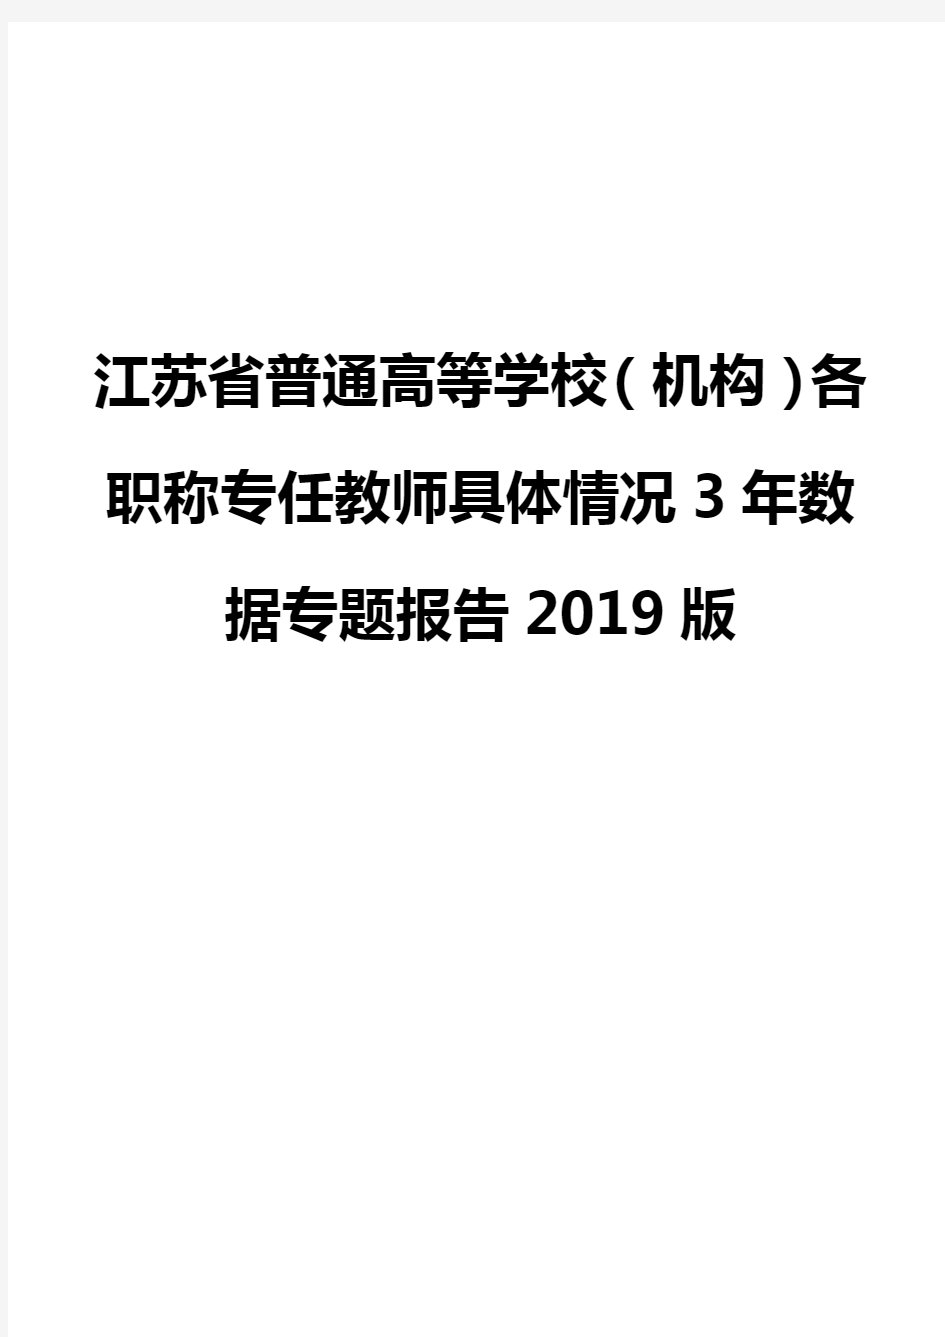 江苏省普通高等学校(机构)各职称专任教师具体情况3年数据专题报告2019版